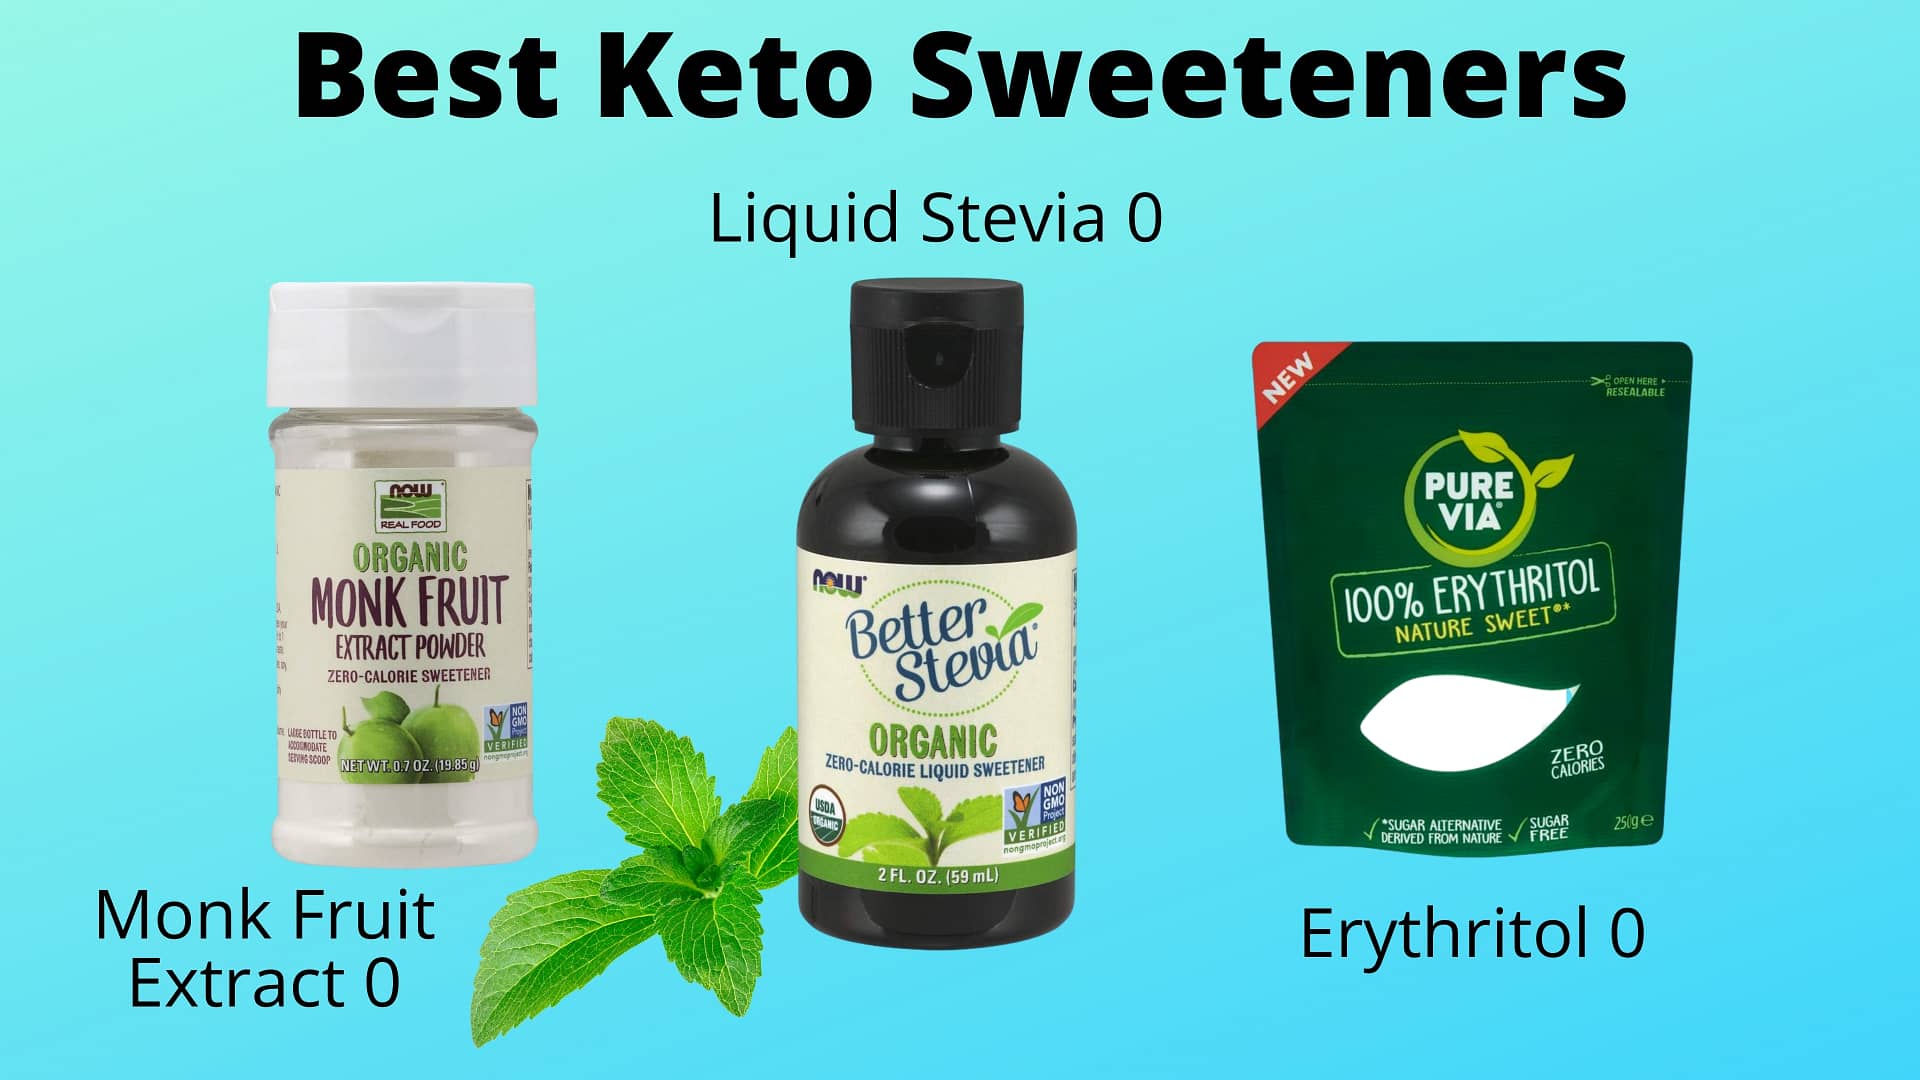 The Best Keto Sweeteners.